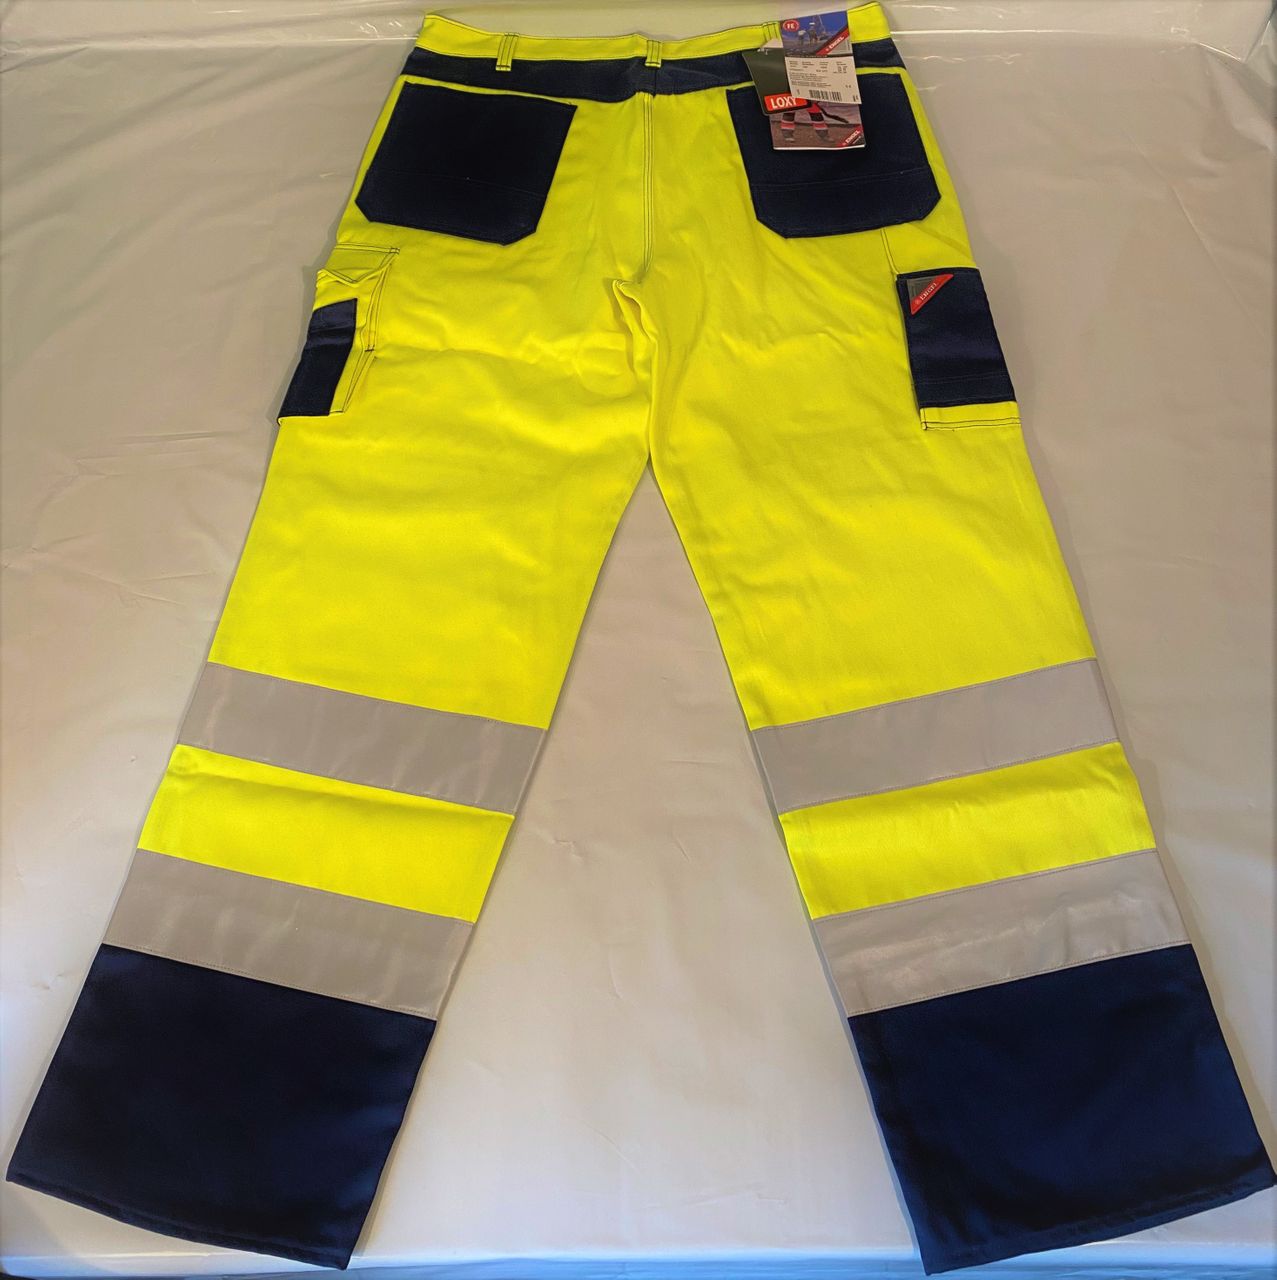 ENGEL Bundhose gelb/marine Nr. 2701-425 Arbeitshose Arbeitsschutz Hose Arbeit